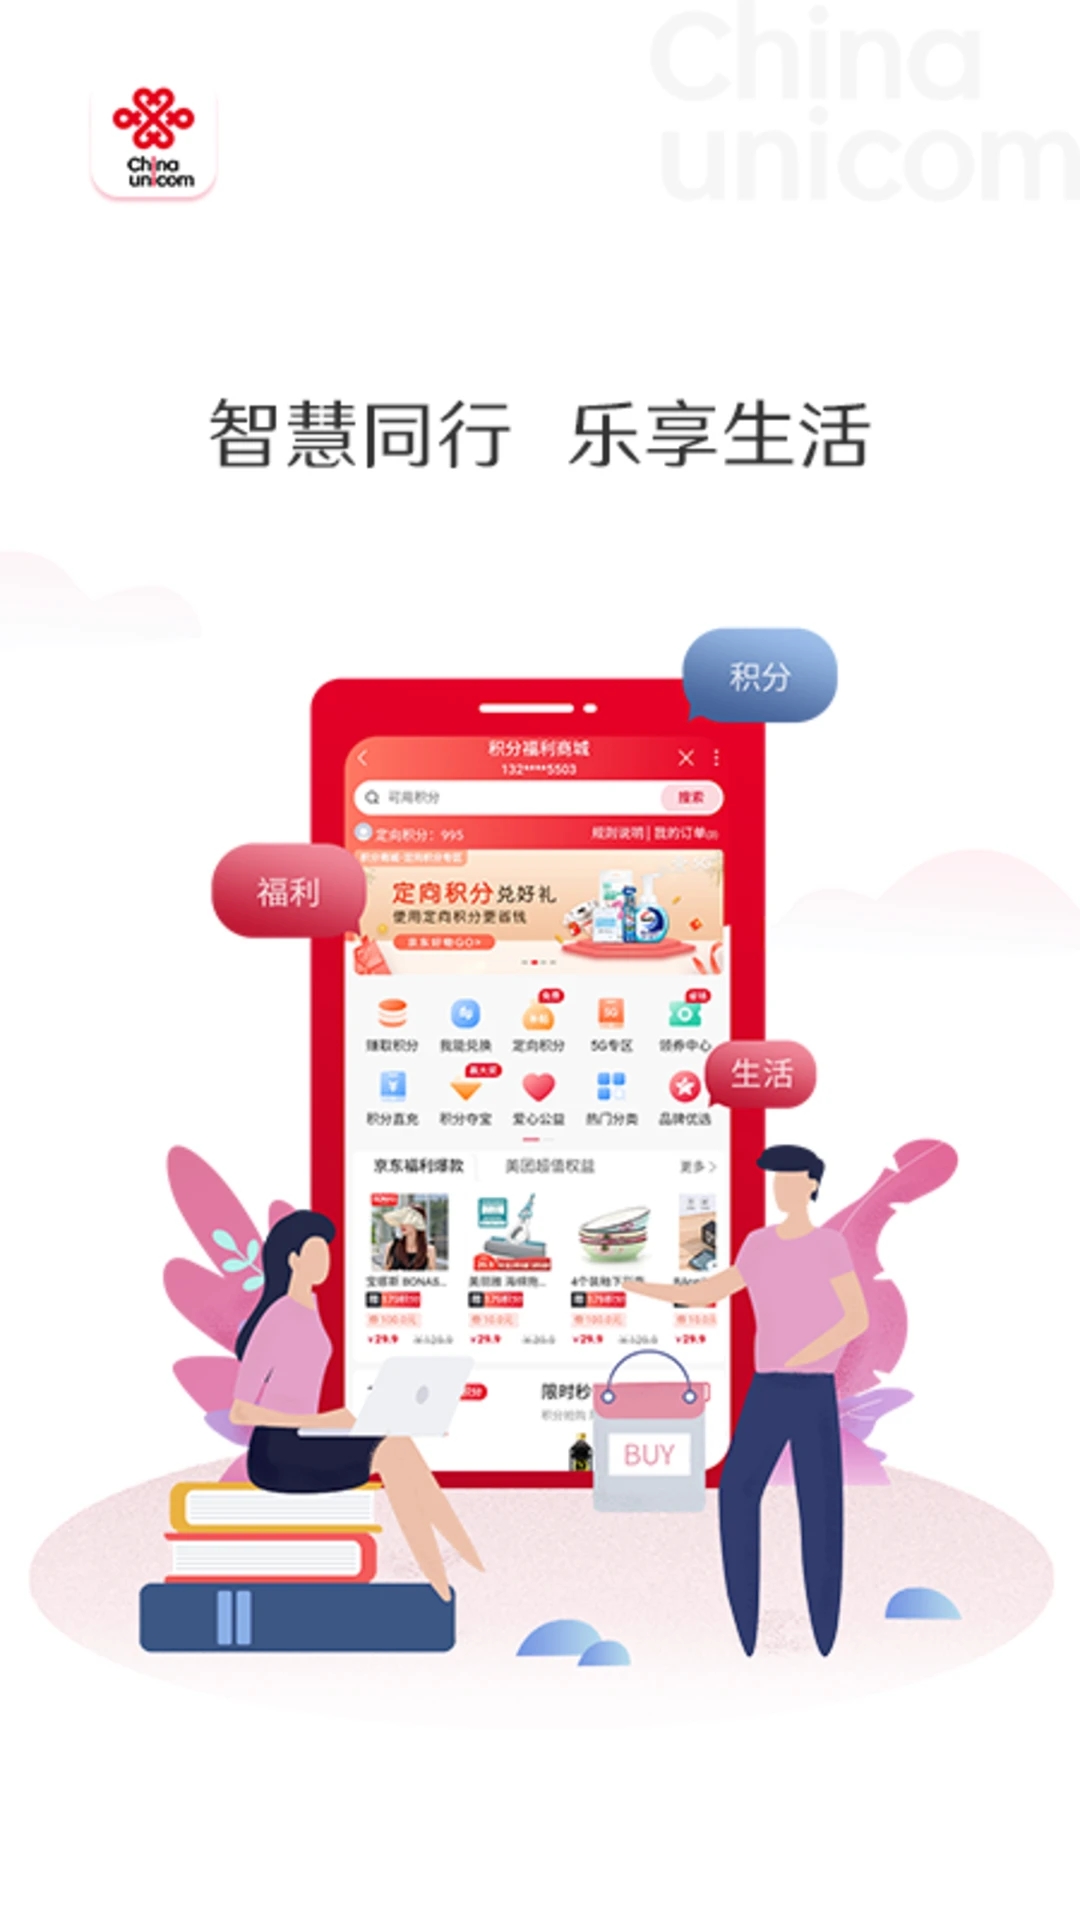 中国联通手机营业厅 for iPhone